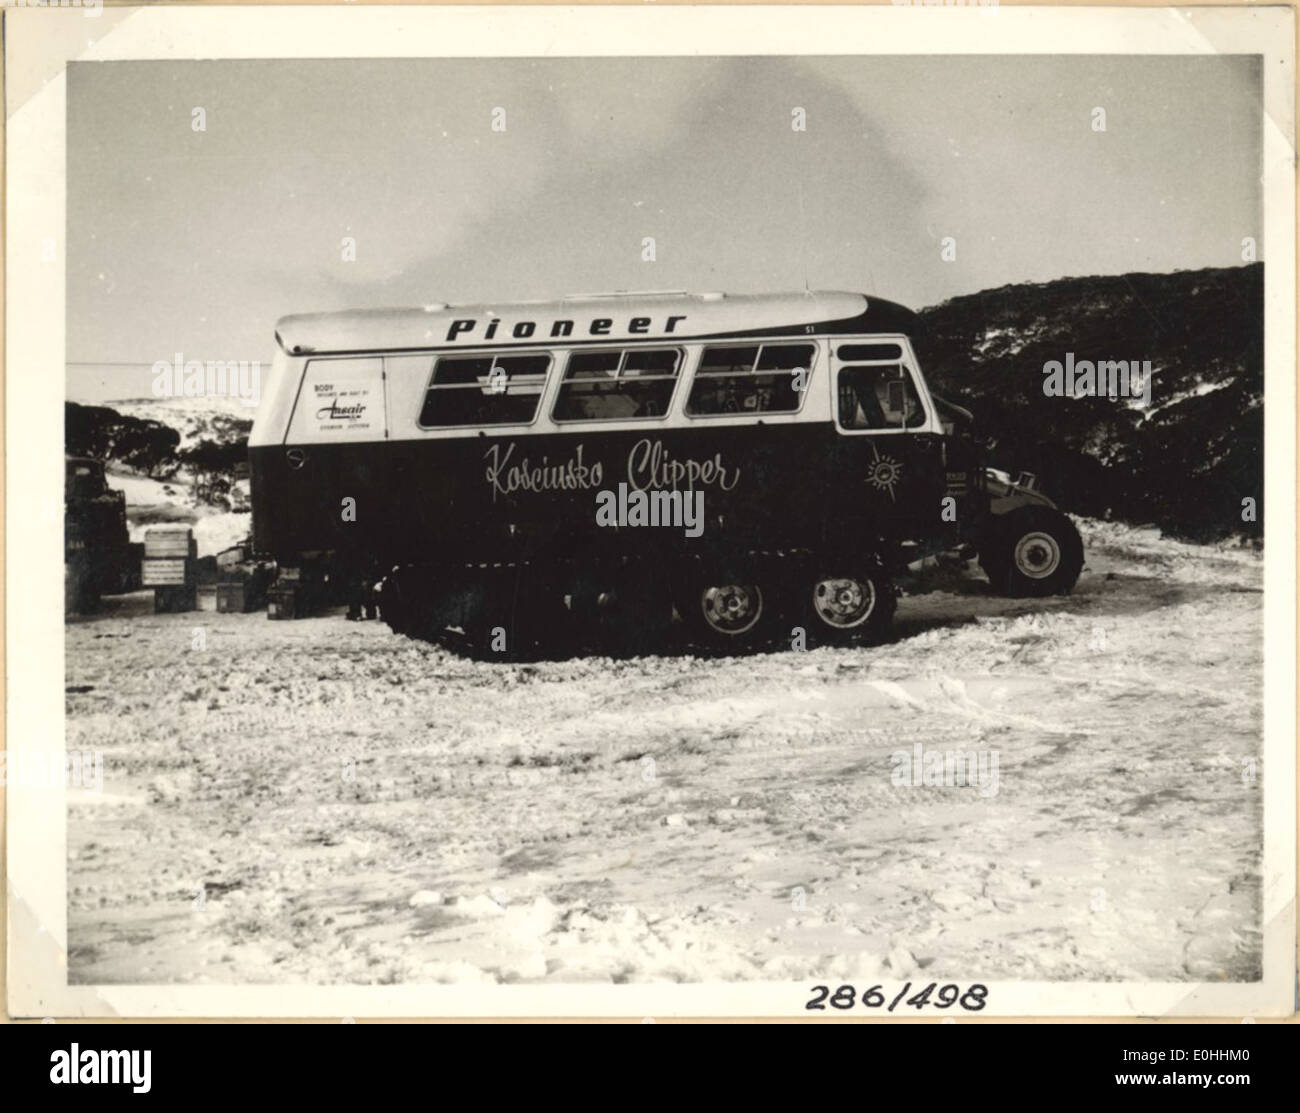 Ansair Schnee Wagen [Pioneer Kosciusko Clipper] an Smiggin Löchern Stockfoto